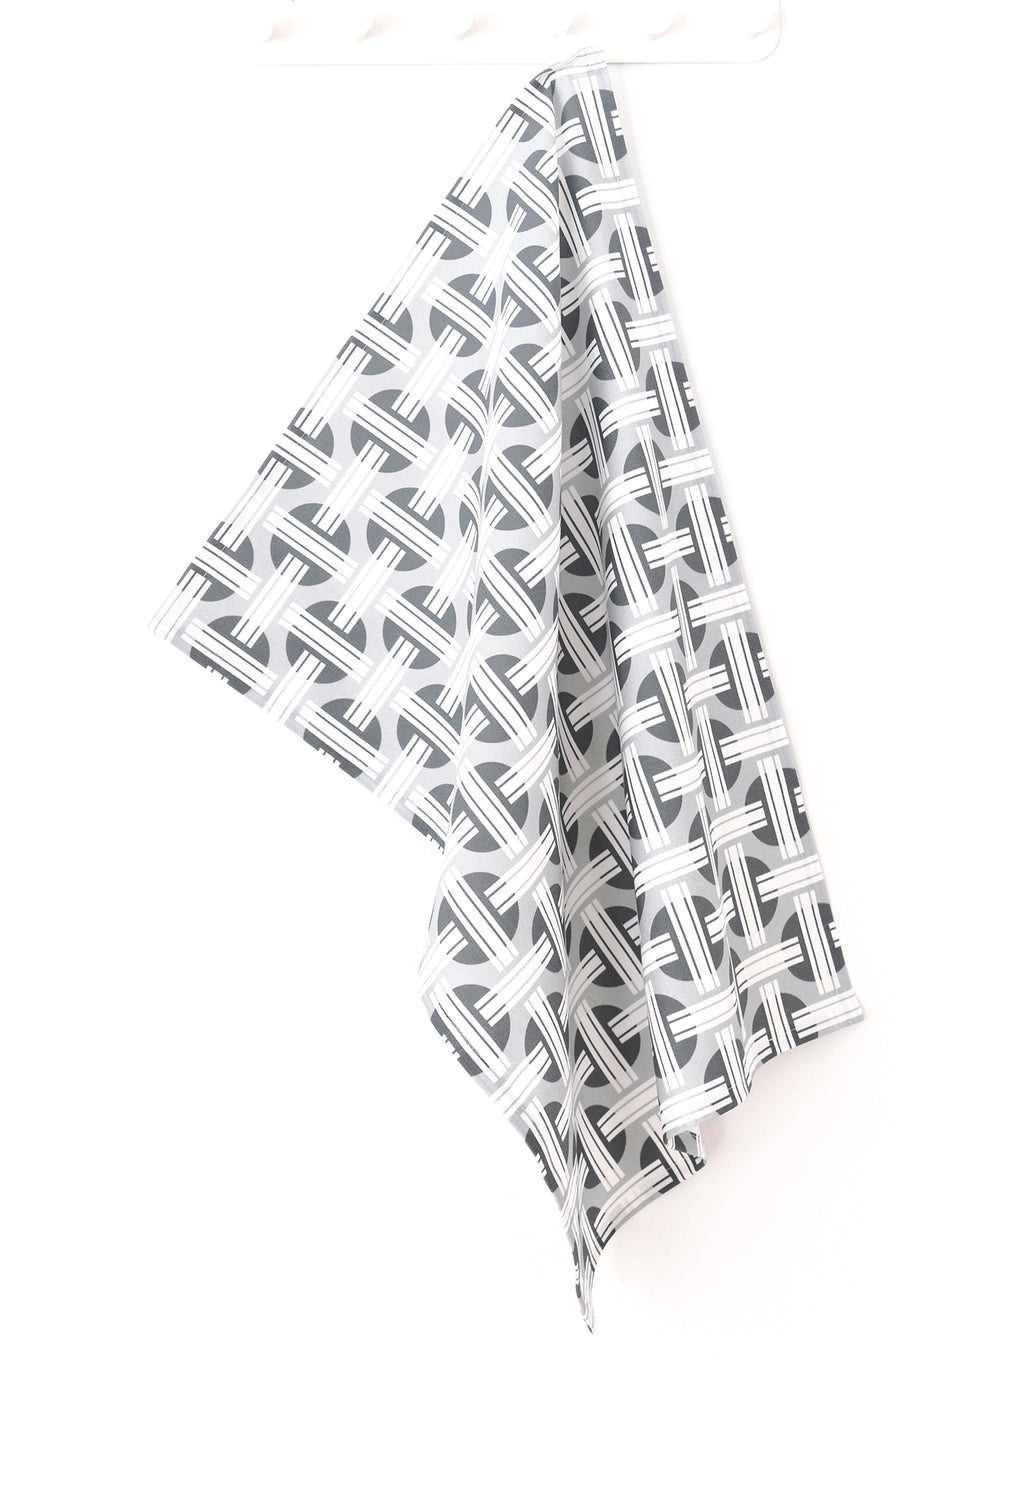 Orient Linen Cotton Tea Towel (18.5x25) – Steel Grey